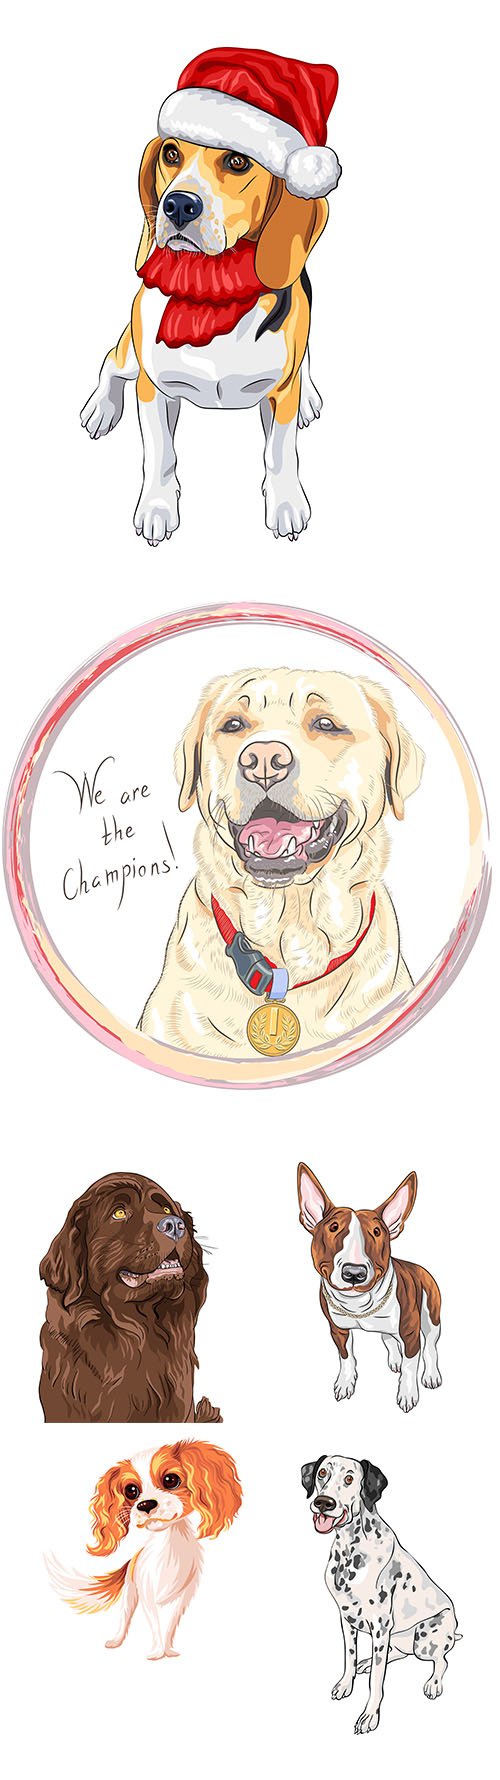 Color sketch dog illustrations